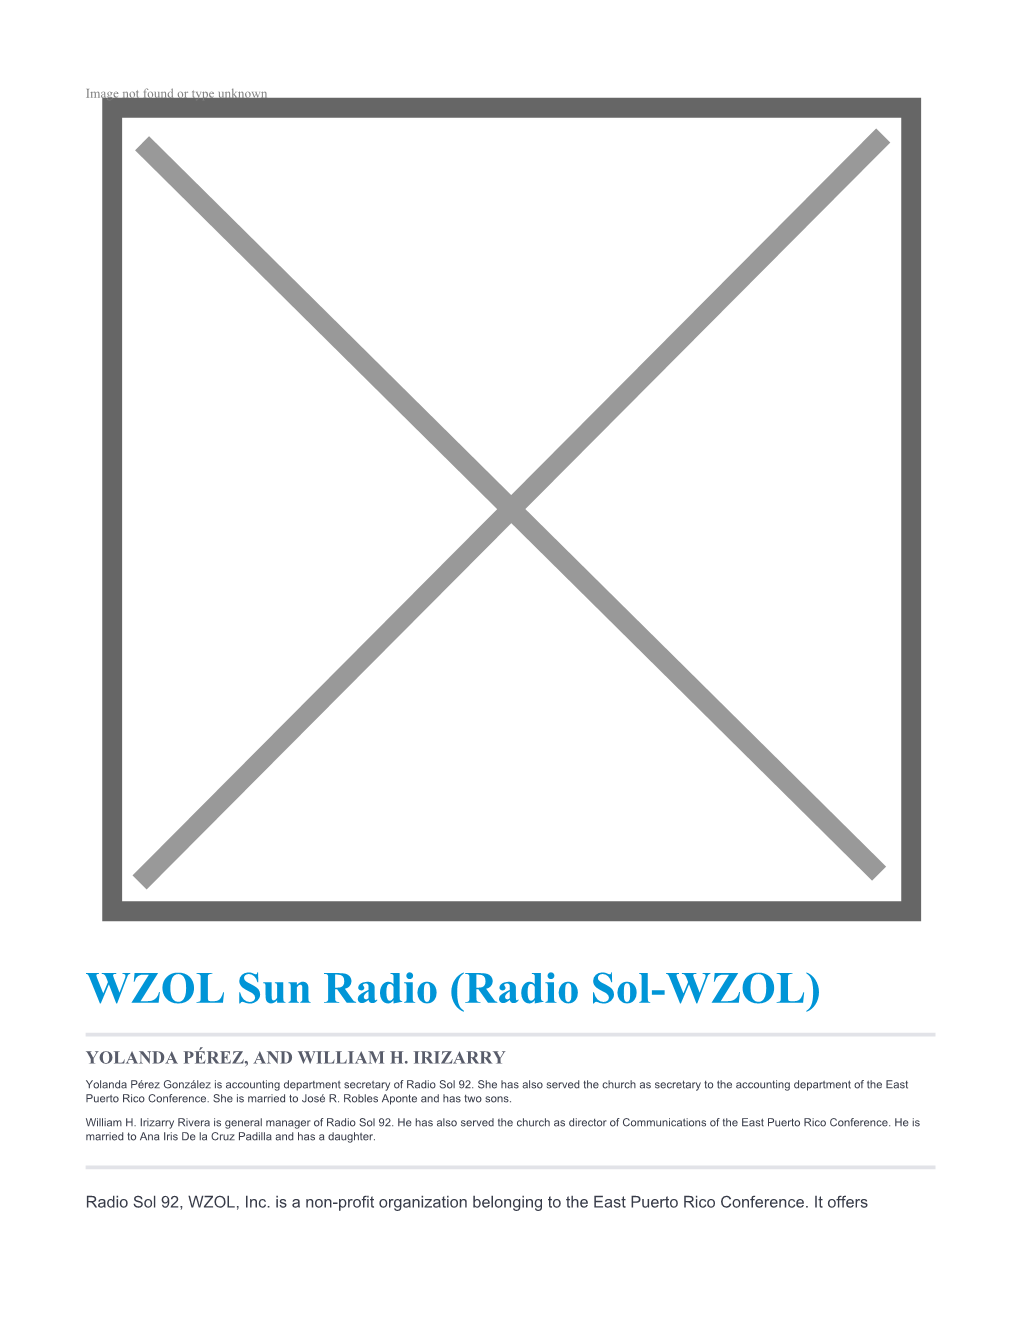 Radio Sol-WZOL)